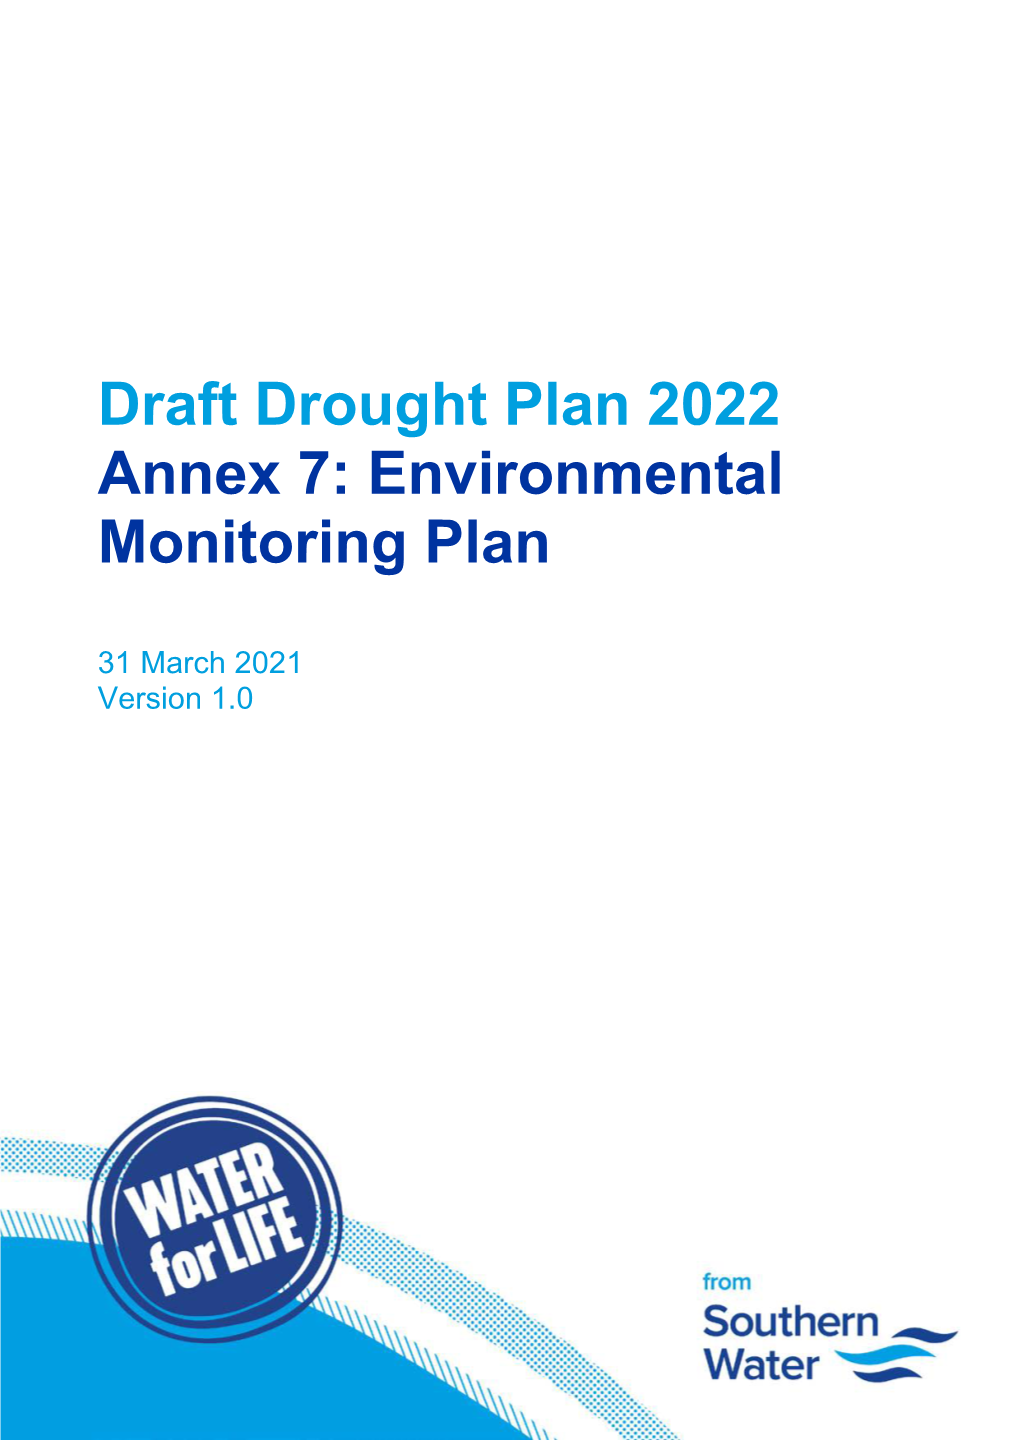 Draft Drought Plan 2022 Annex 7: Environmental Monitoring Plan